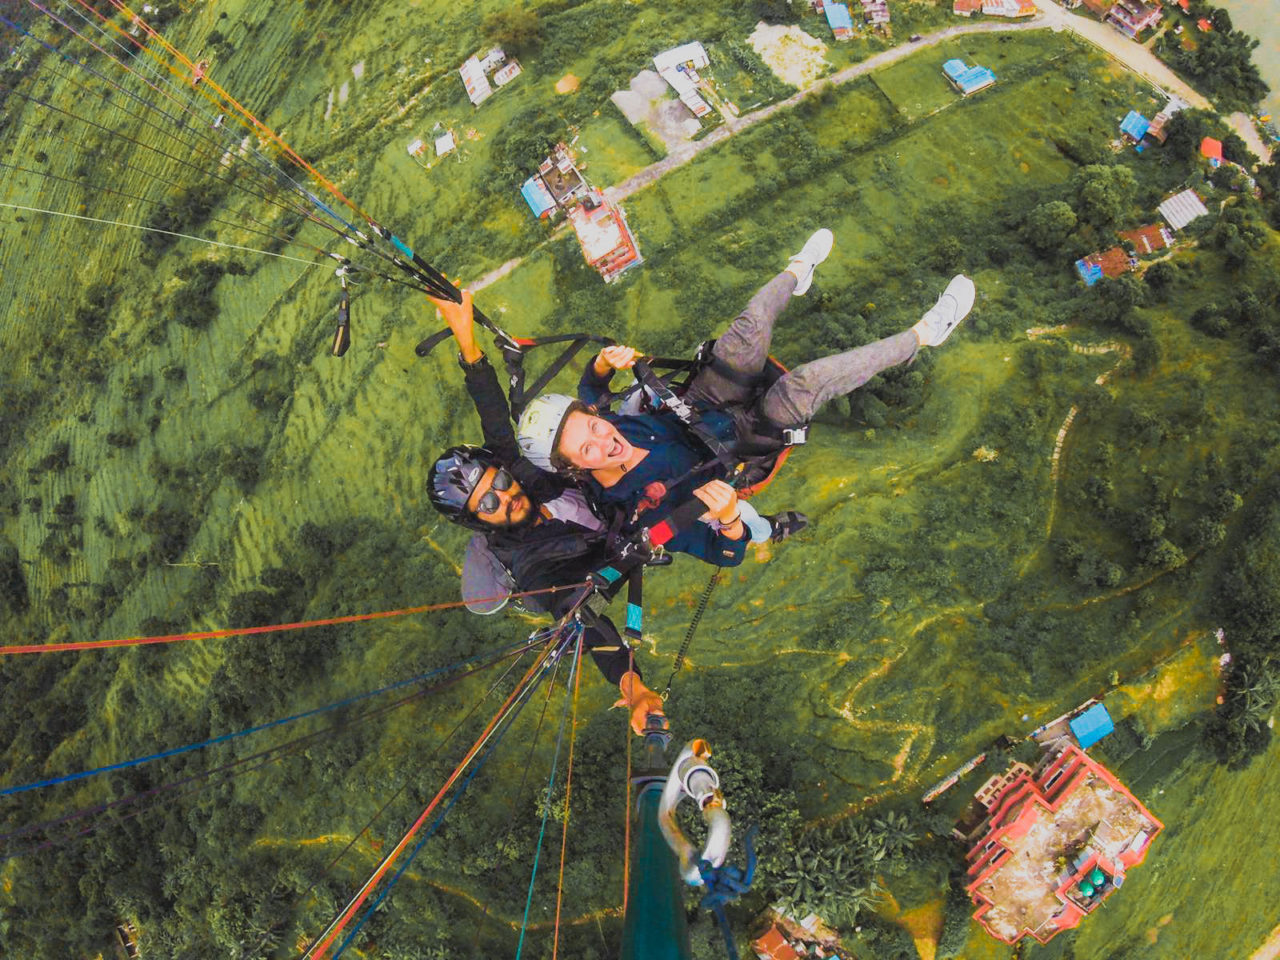 Nepal skydiving